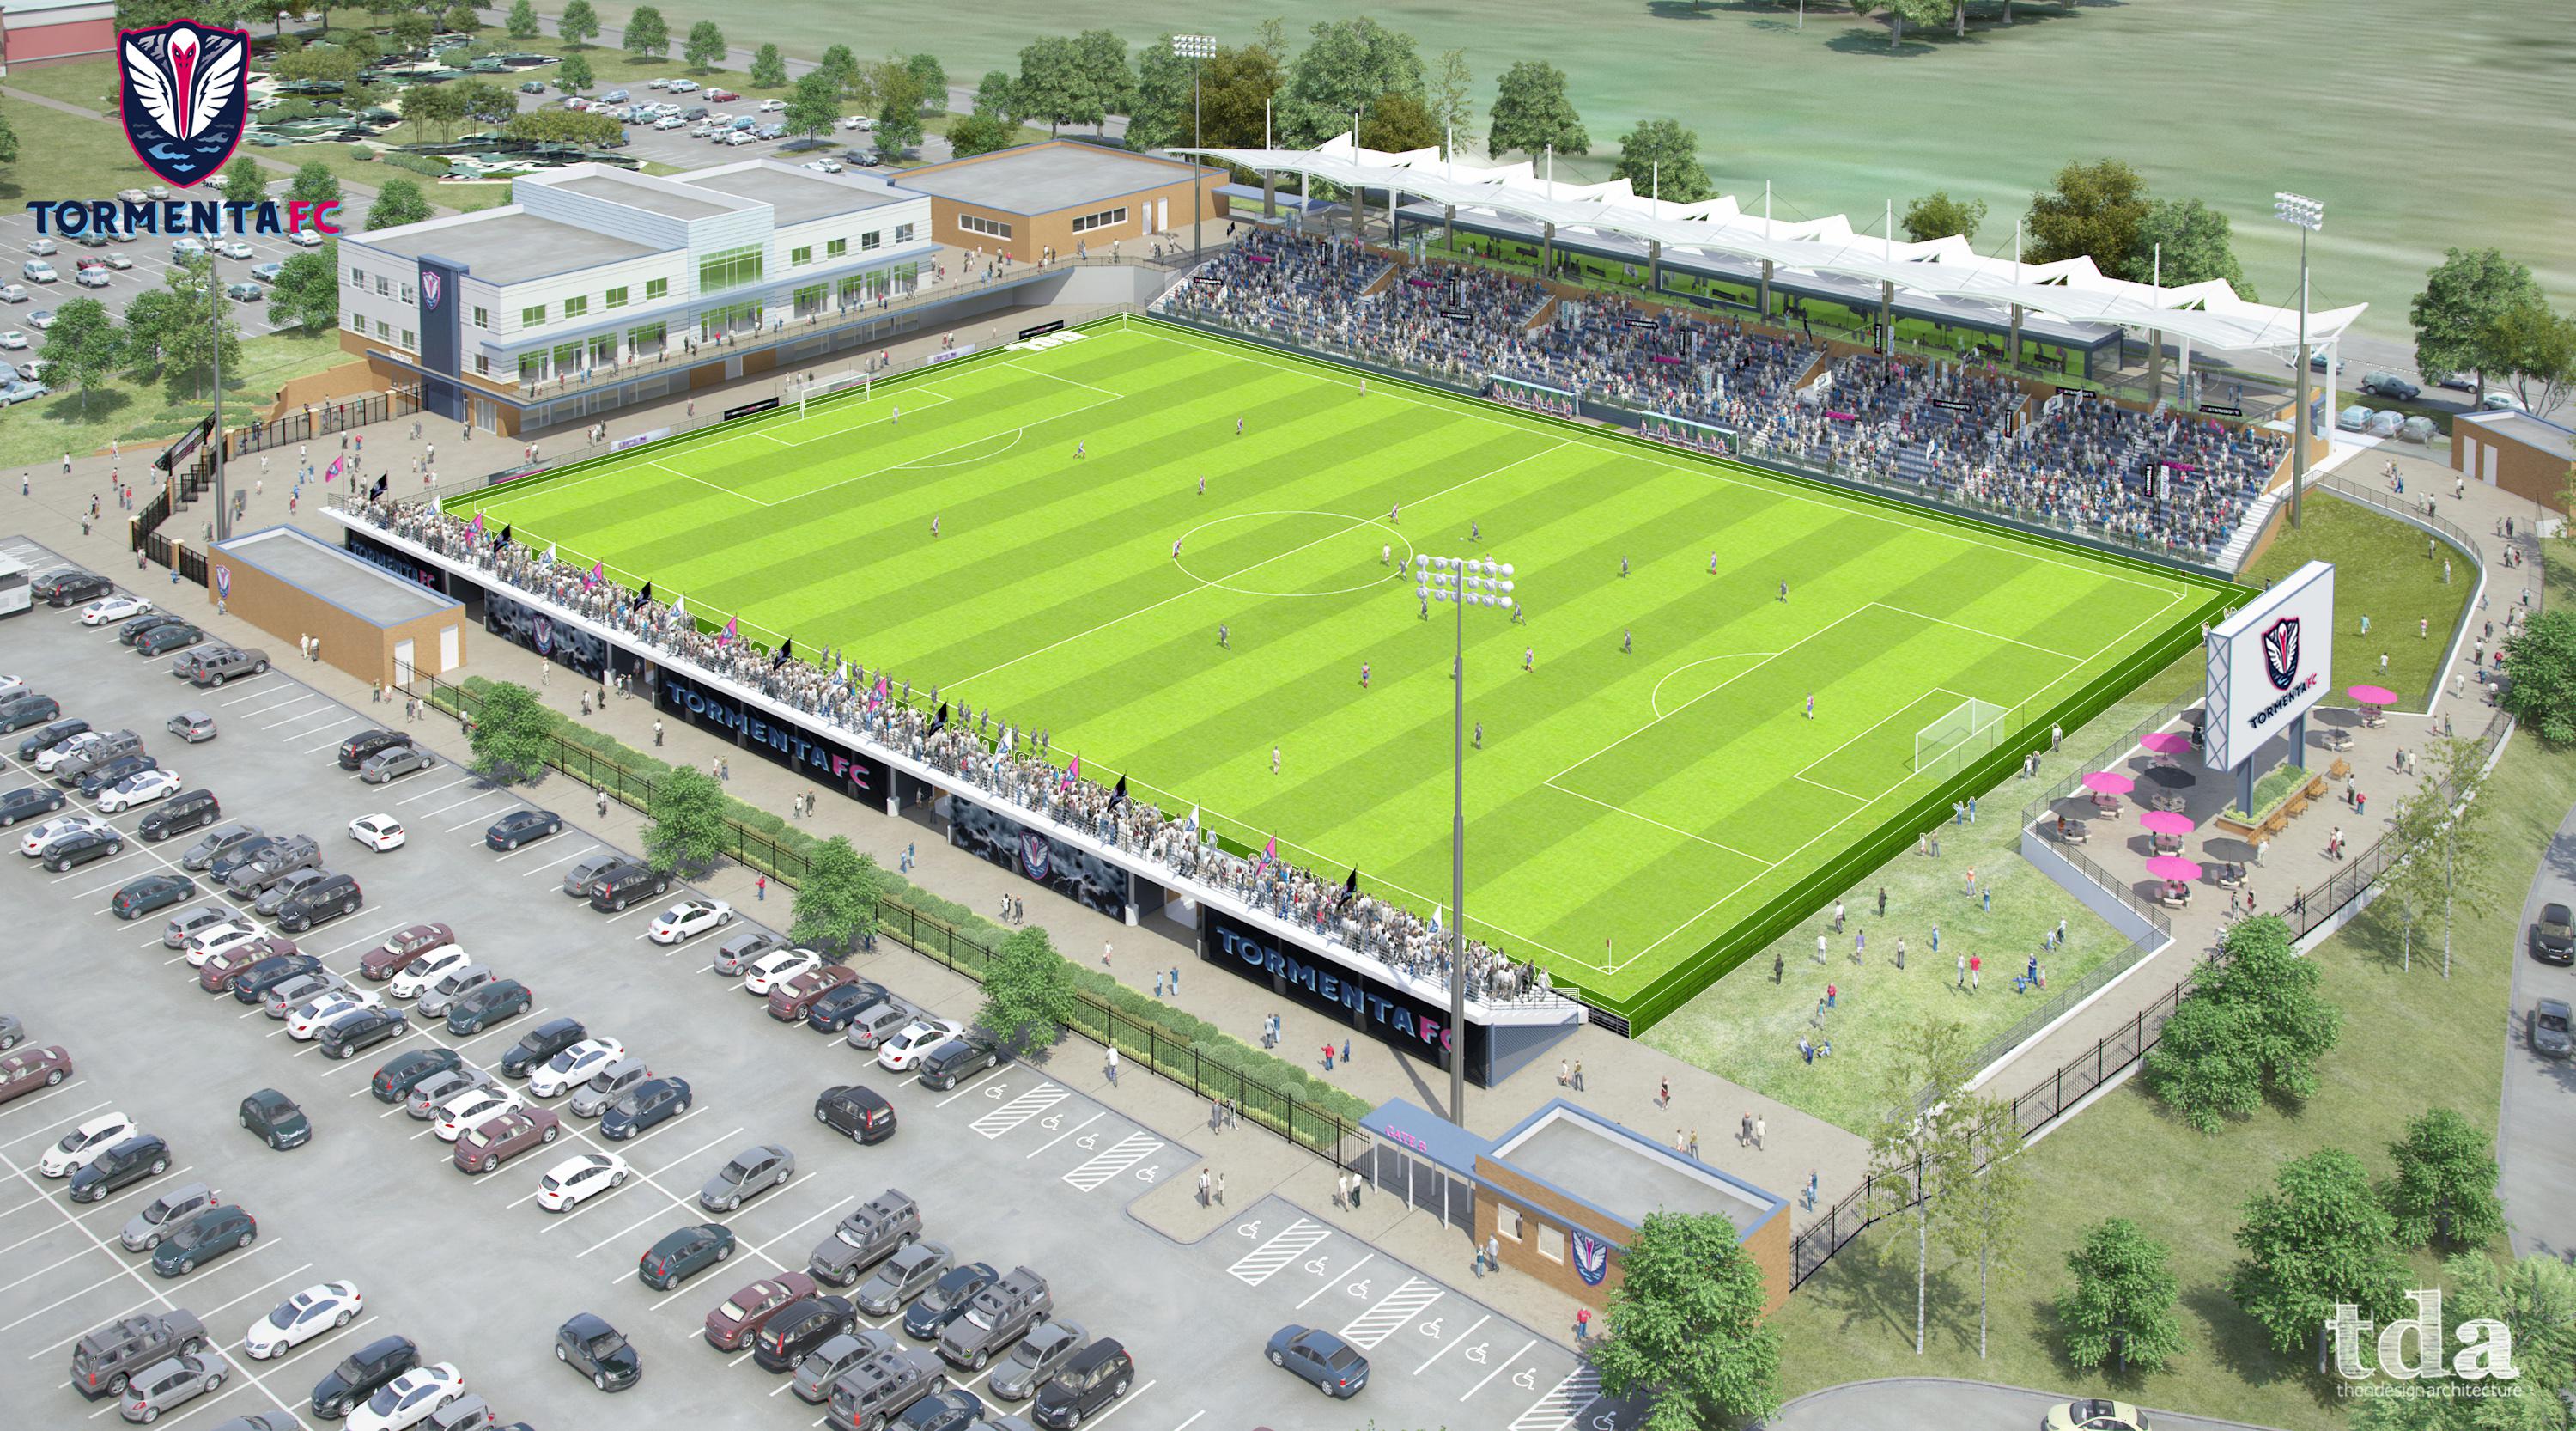 Tormenta FC Unveils Proposed Stadium Plans - Soccer Stadium Digest